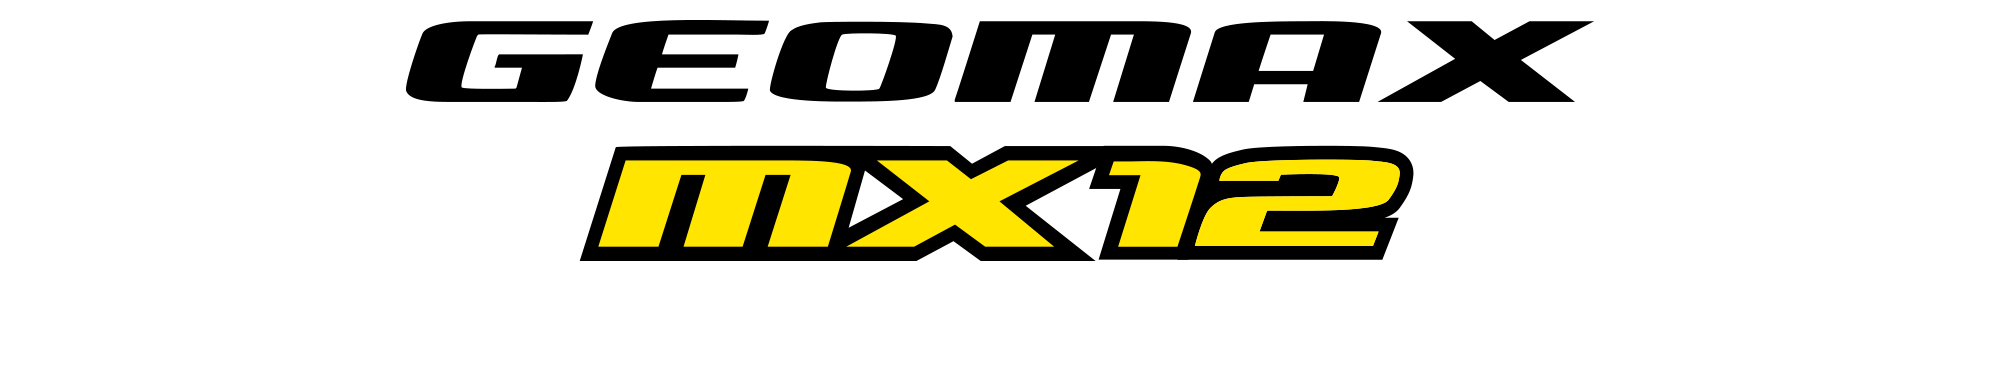 GEOMAX MX12